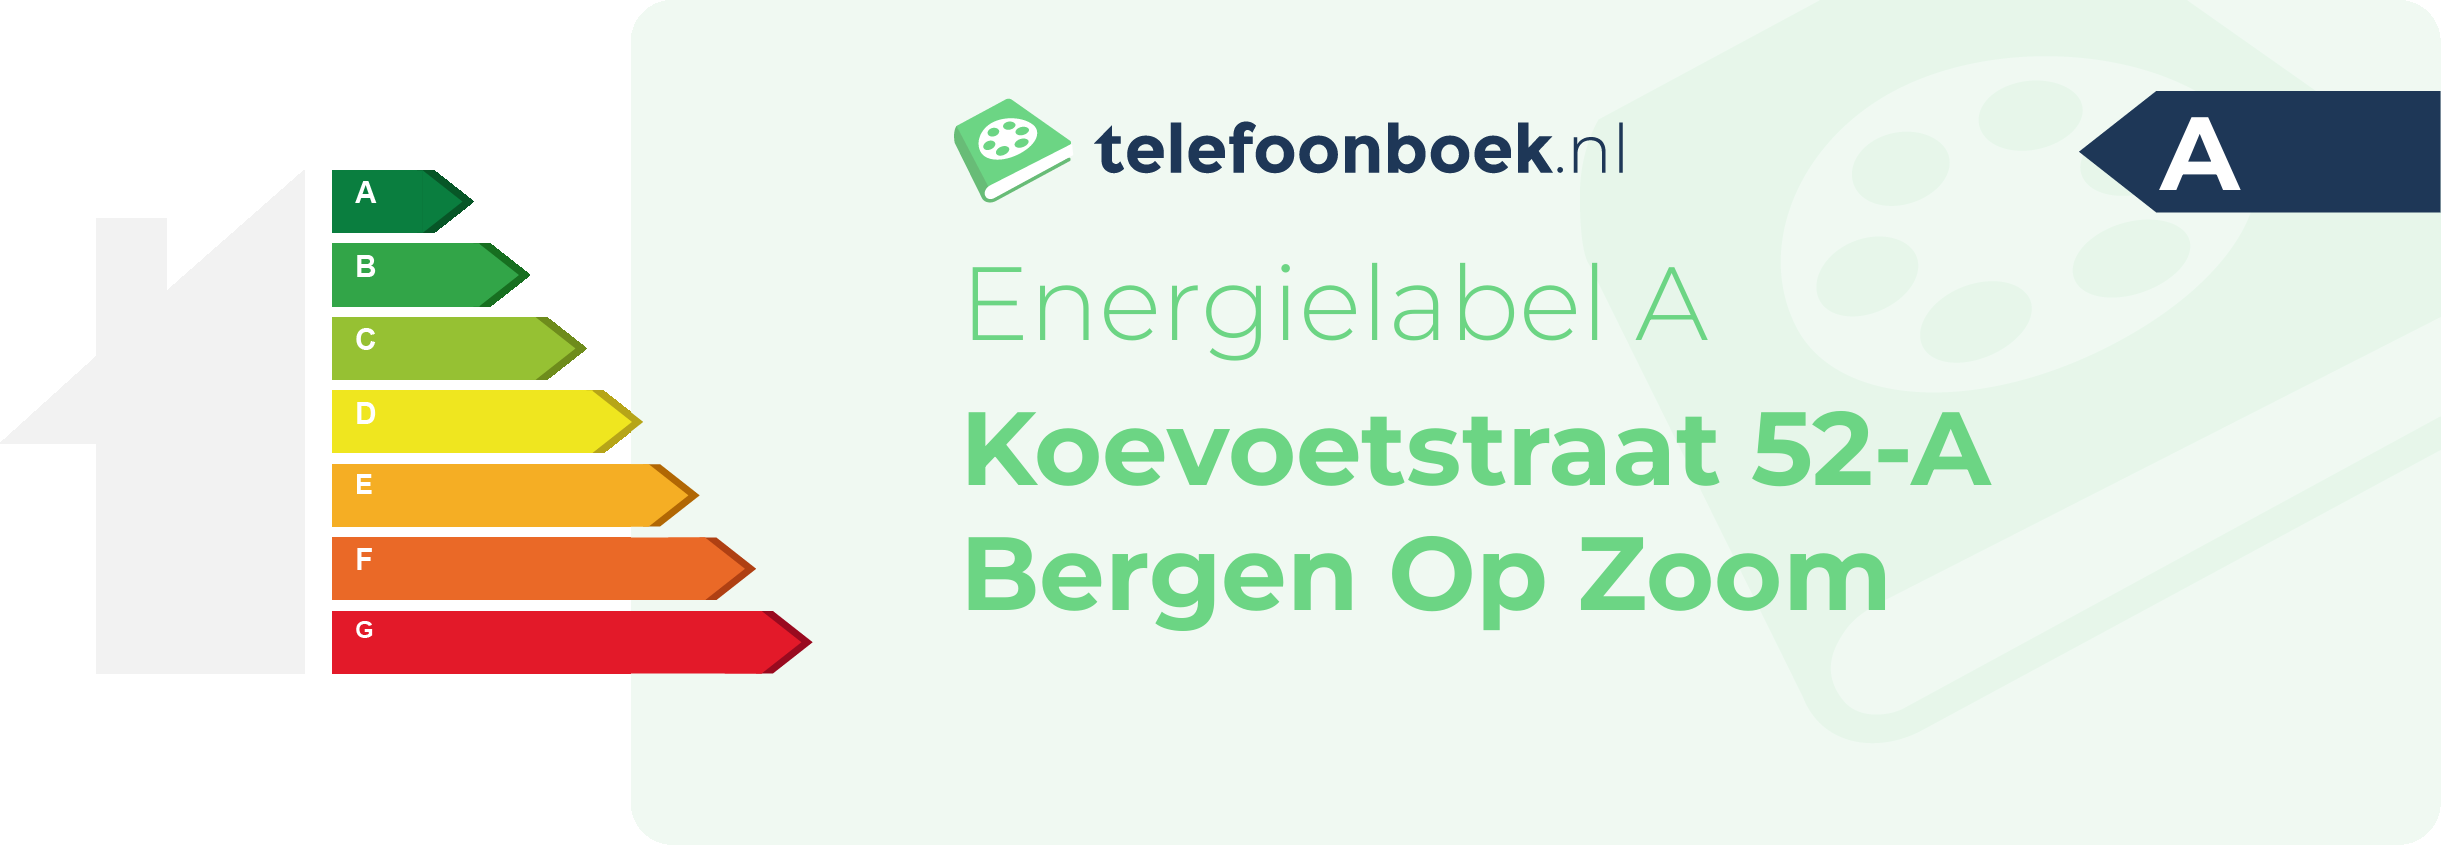 Energielabel Koevoetstraat 52-A Bergen Op Zoom